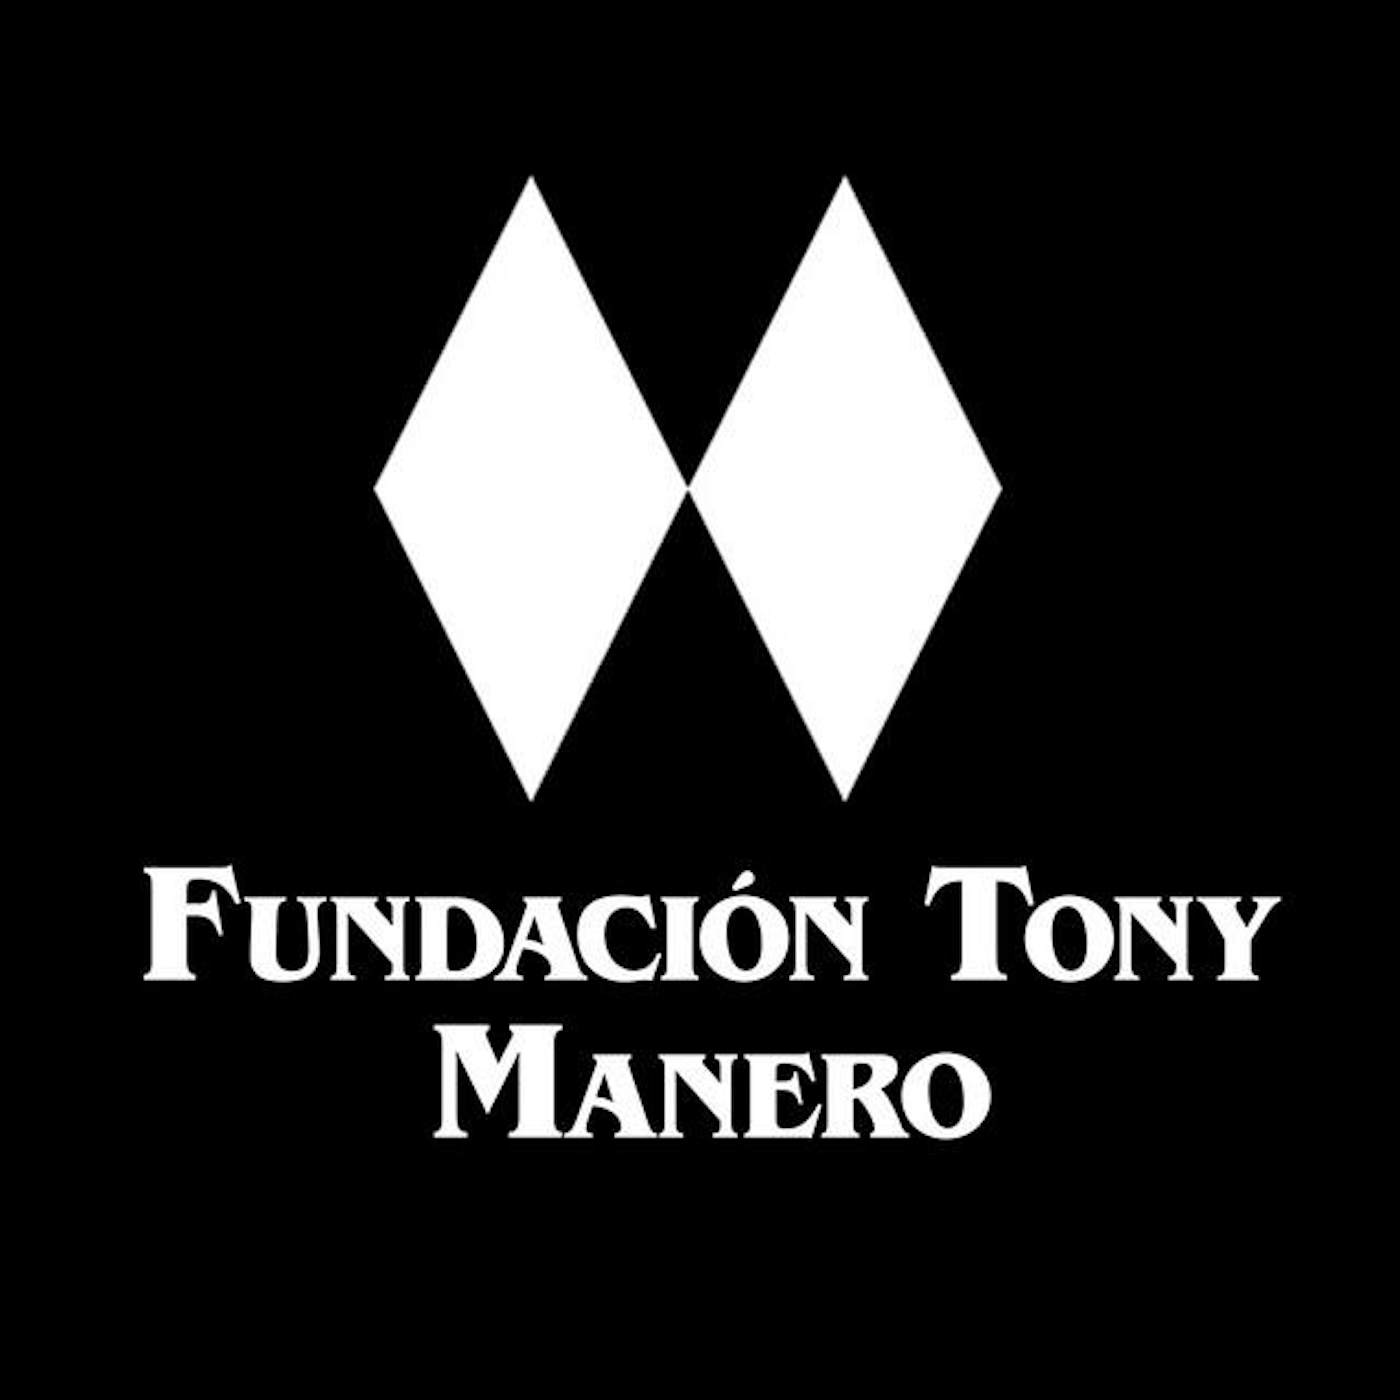 Fundacion Tony Manero